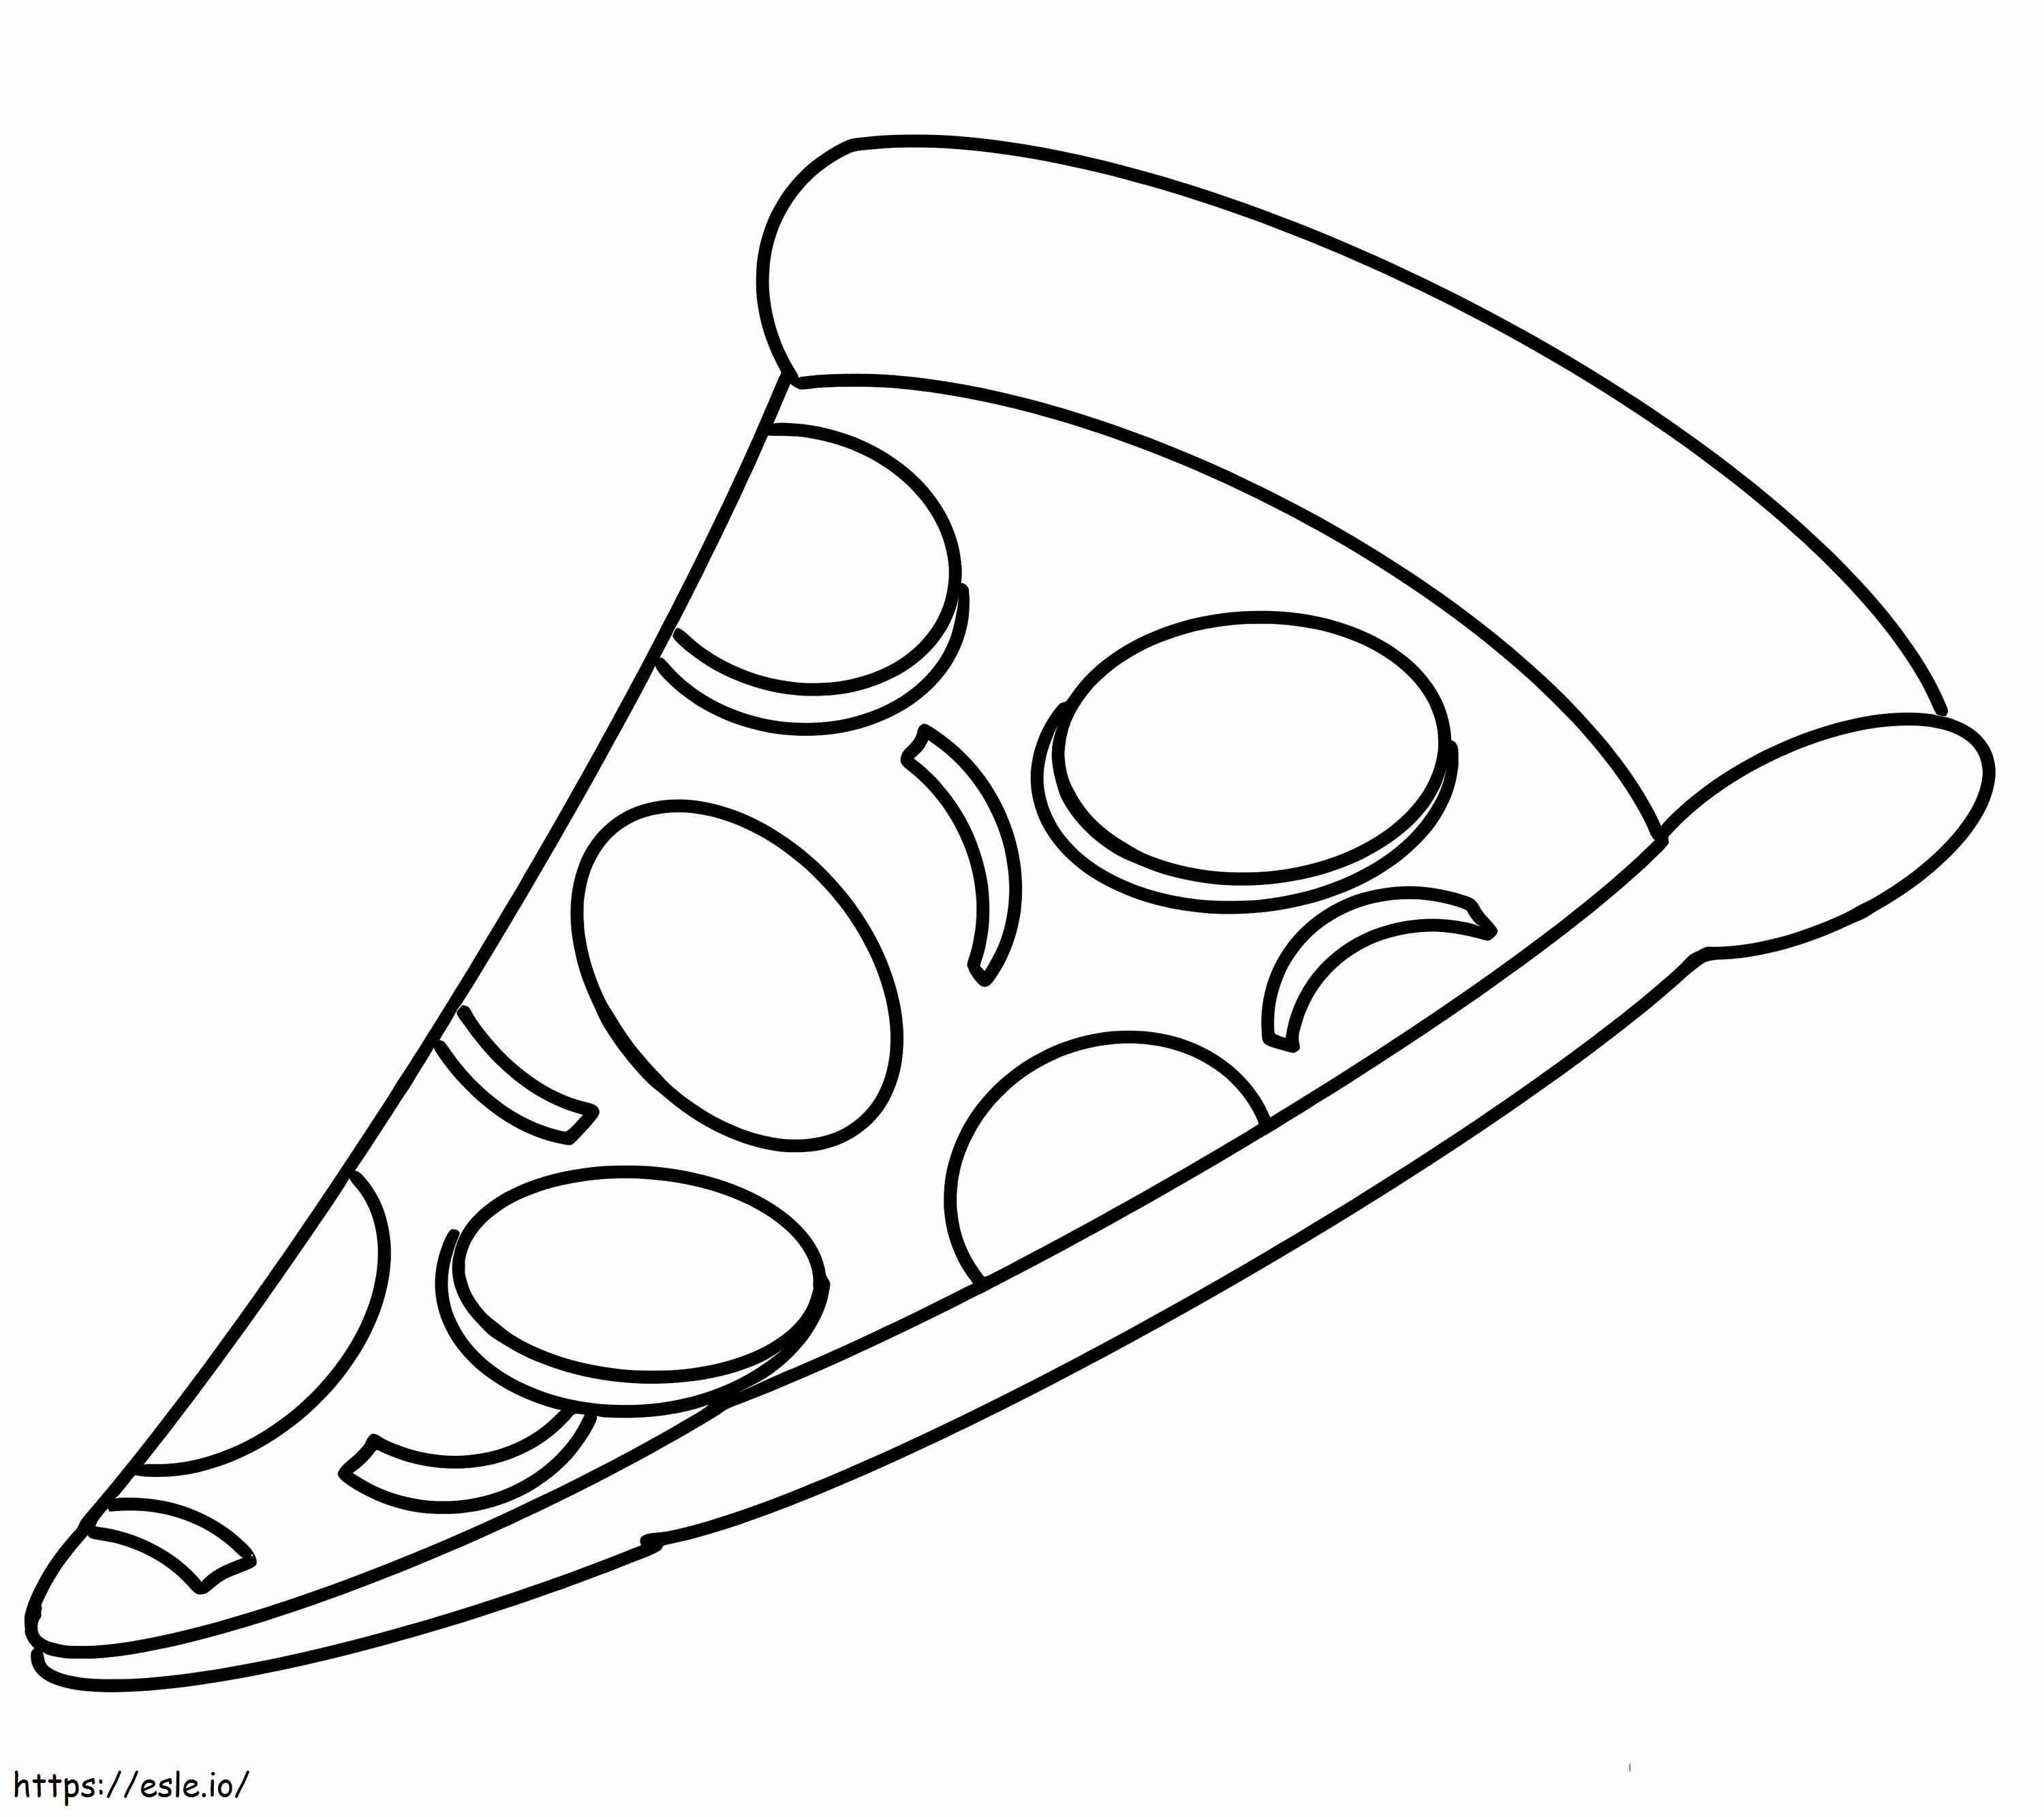 Ein Stück Pizza ausmalbilder